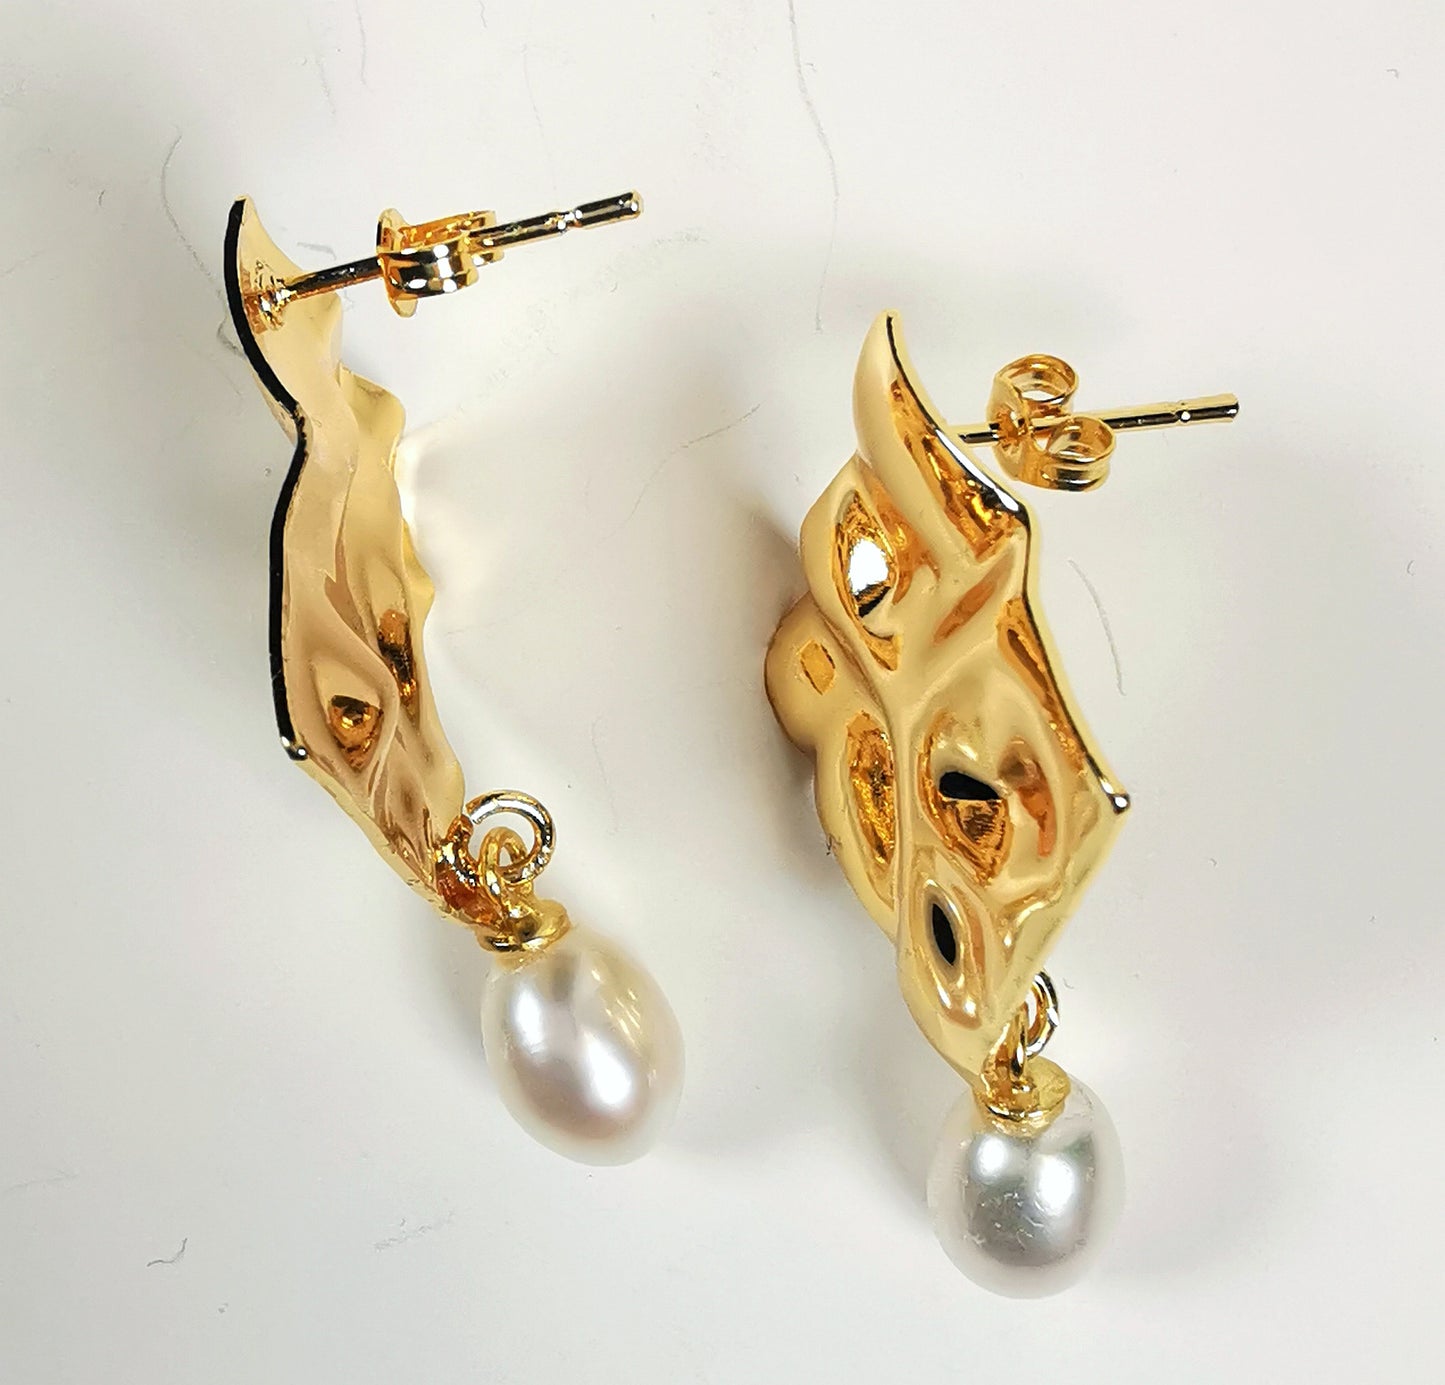 Boucles d'oreilles composées d'un carré martelé de 18mm, plaqué or, sur clou, sous lequel est suspendue une perle blanche , ovale 7-9mm. Présentées posées sur un fond blanc, cote à cote, sur chant Vue de dessus